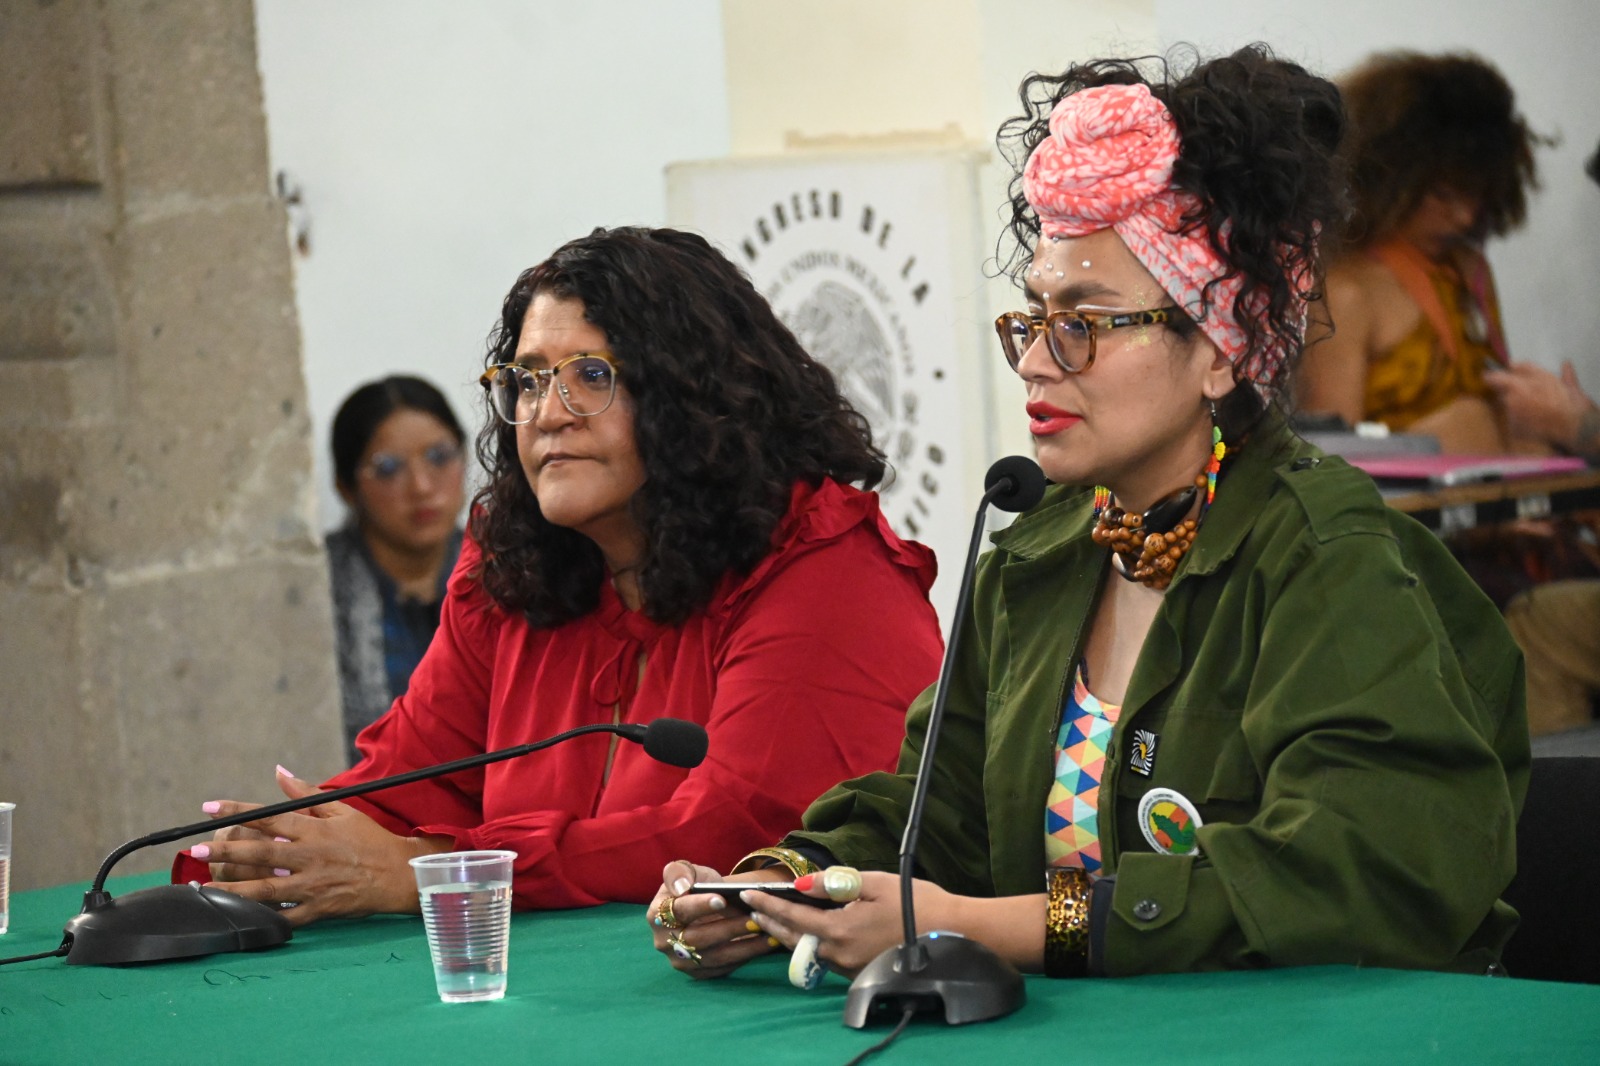 Ciudad de México honra la cultura Africana y Afrodescendiente en un evento memoriable